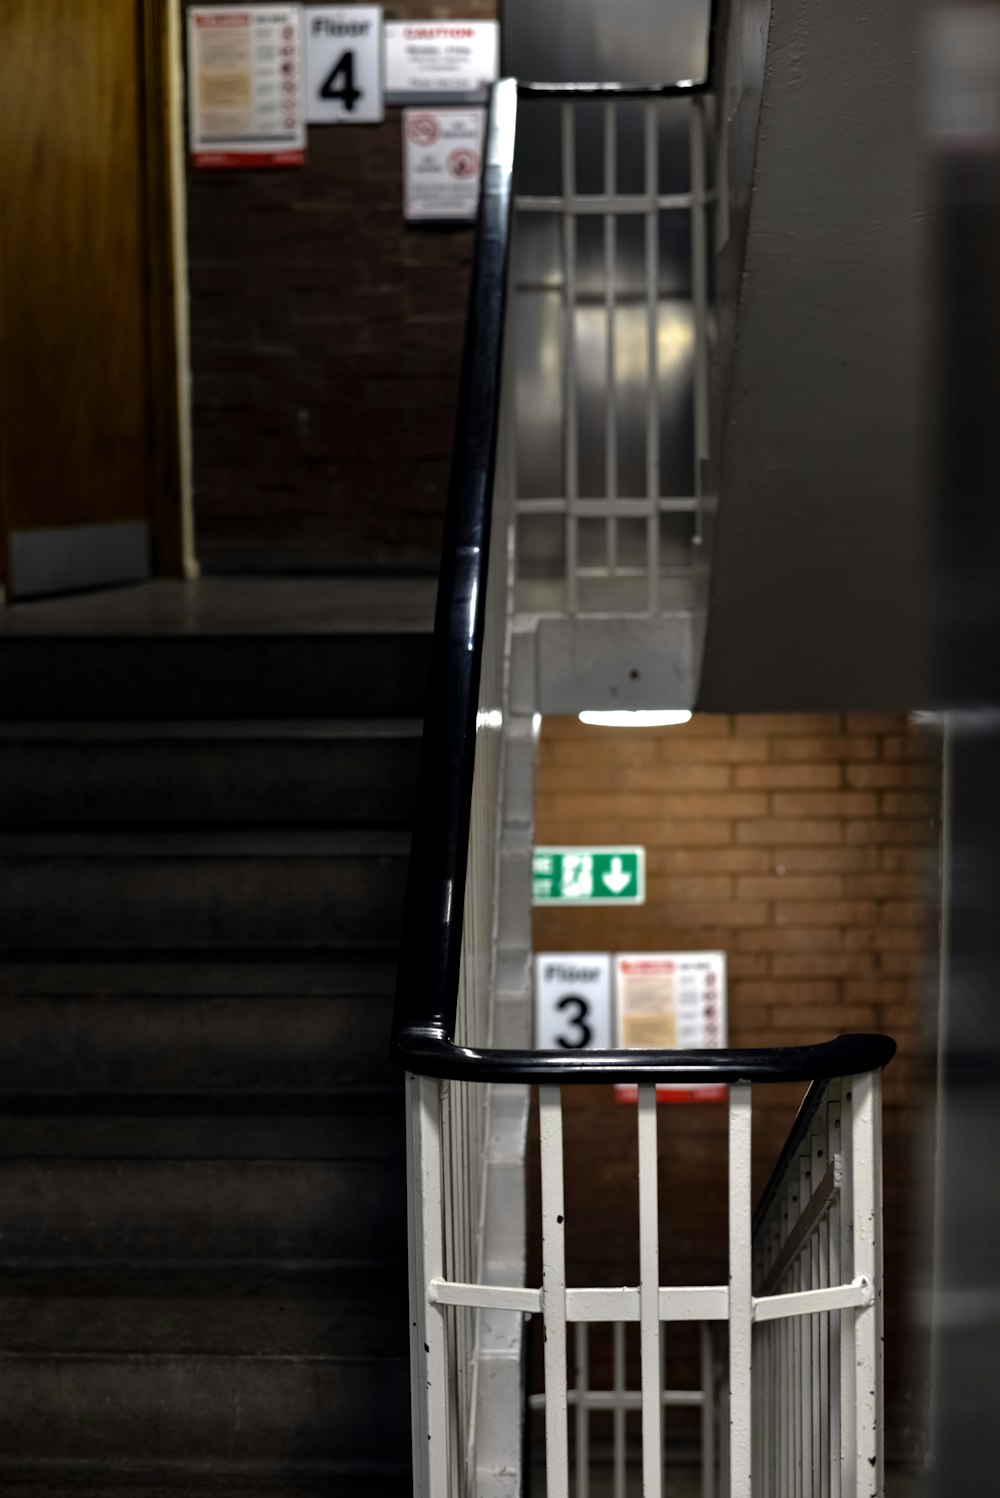 un conjunto de escaleras que conducen a un edificio